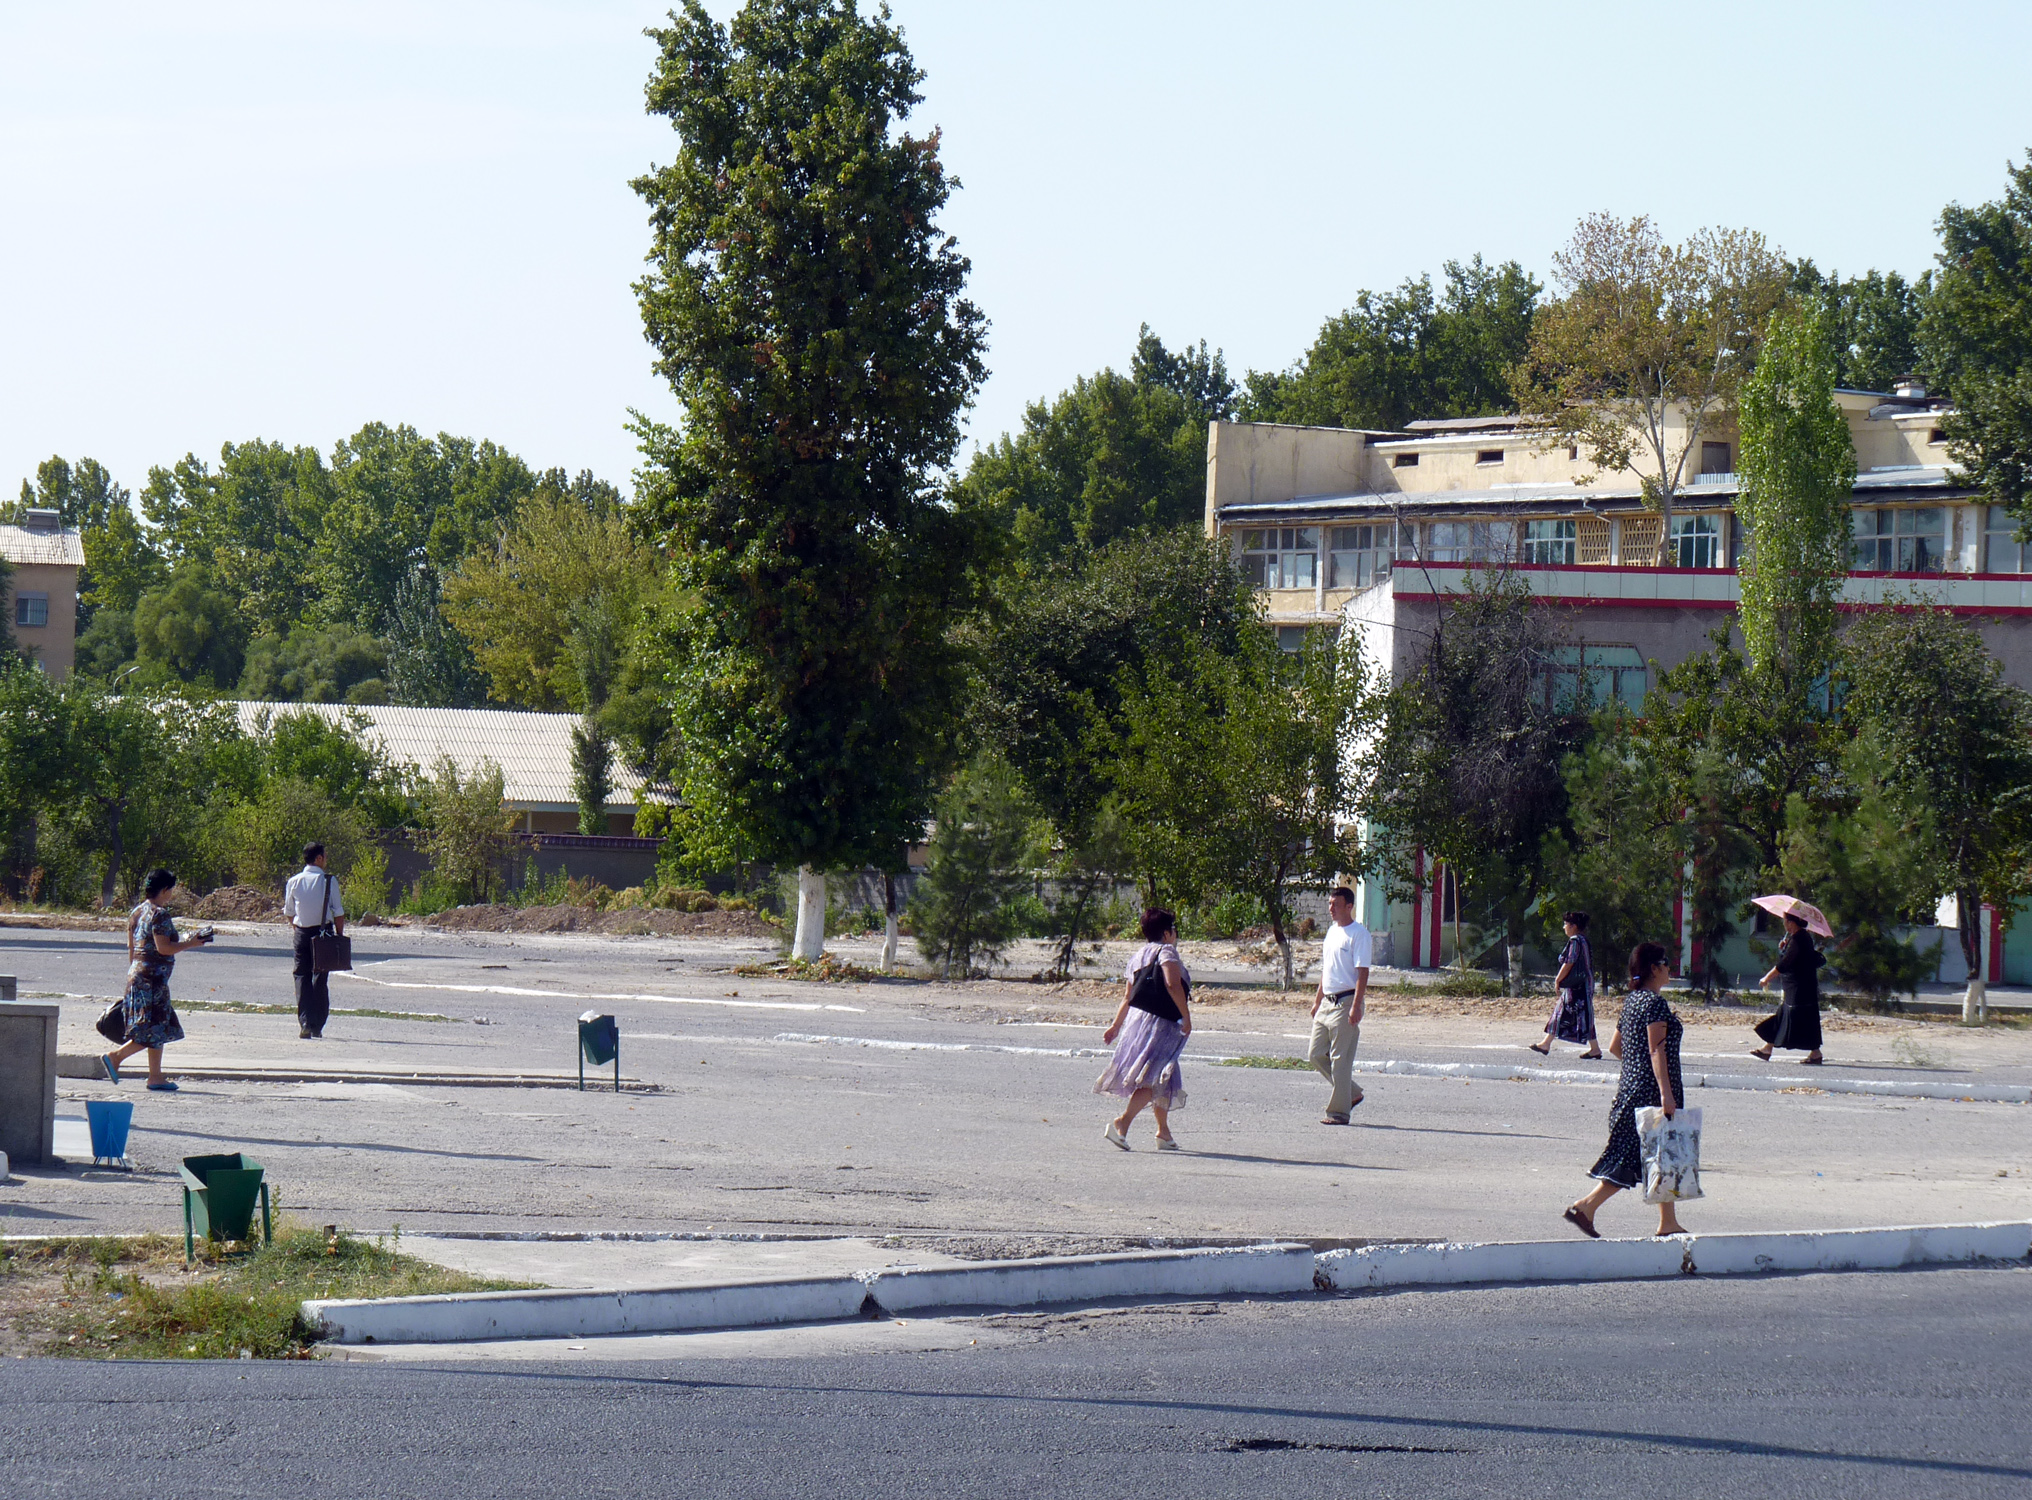 Хокимиат Ташкента сообщил о перекрытии улиц в районе вузгородка (карта)